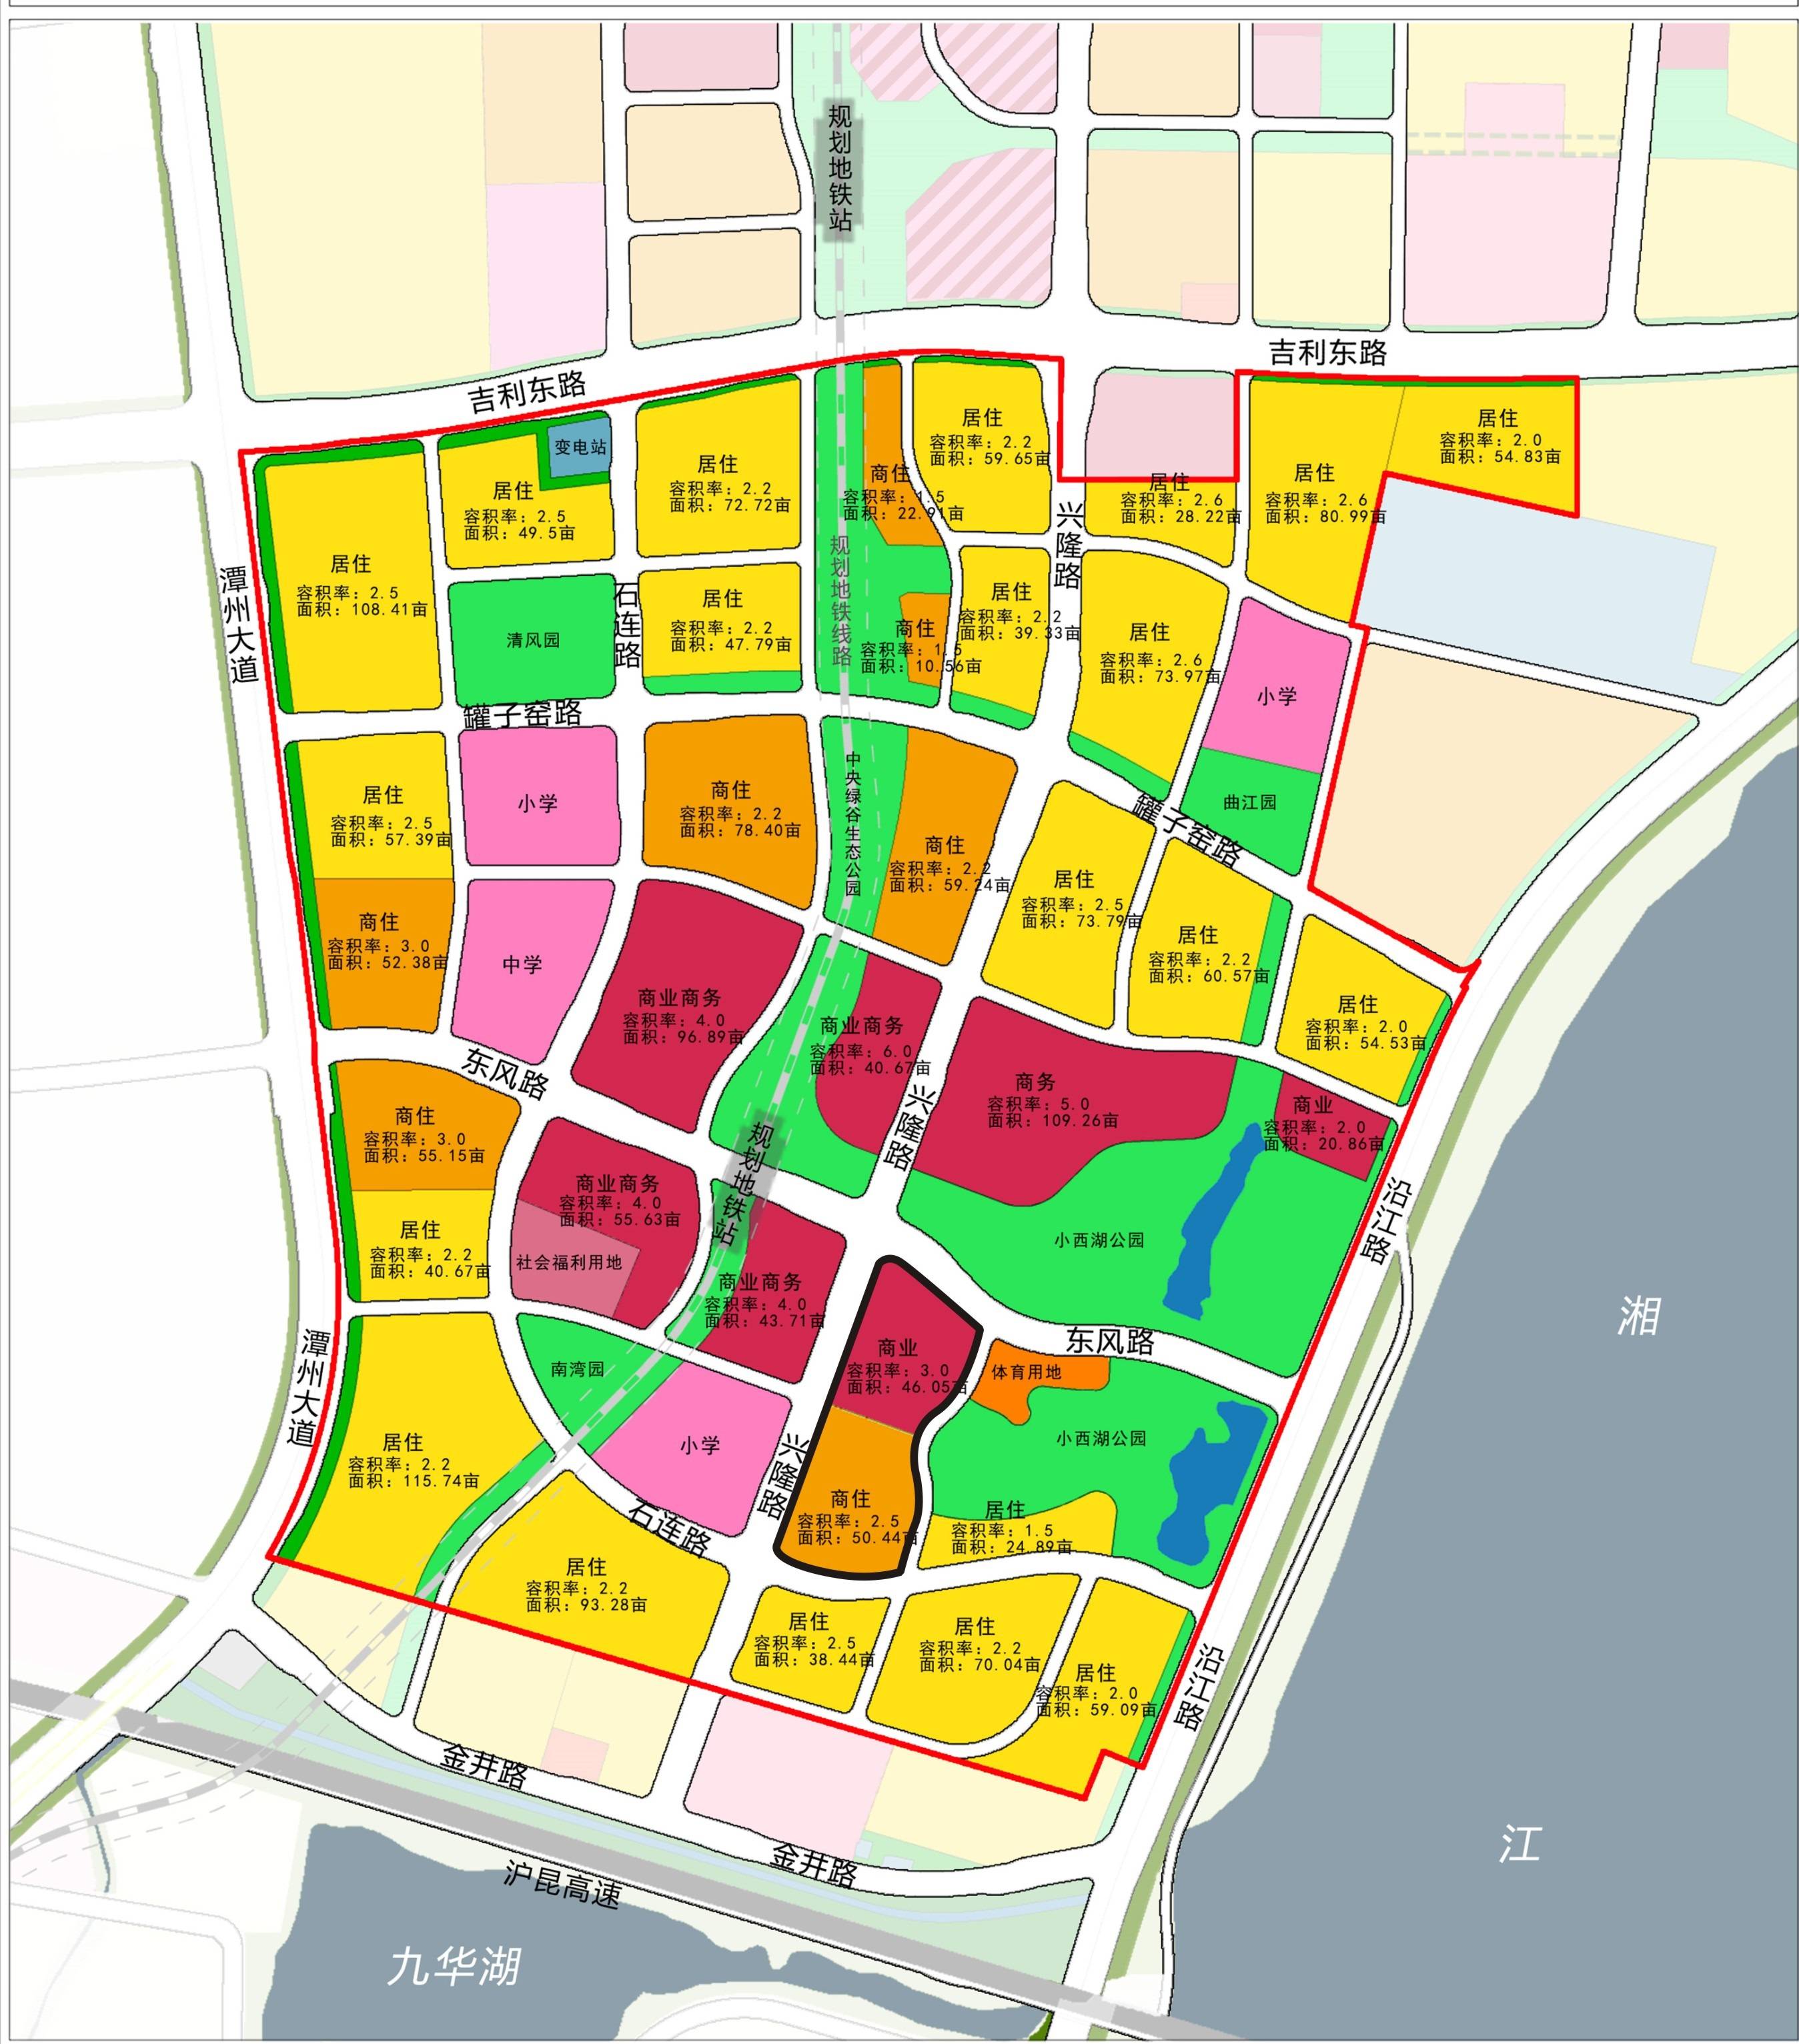 湘潭市自然资源和规划局隆重推出11643地块